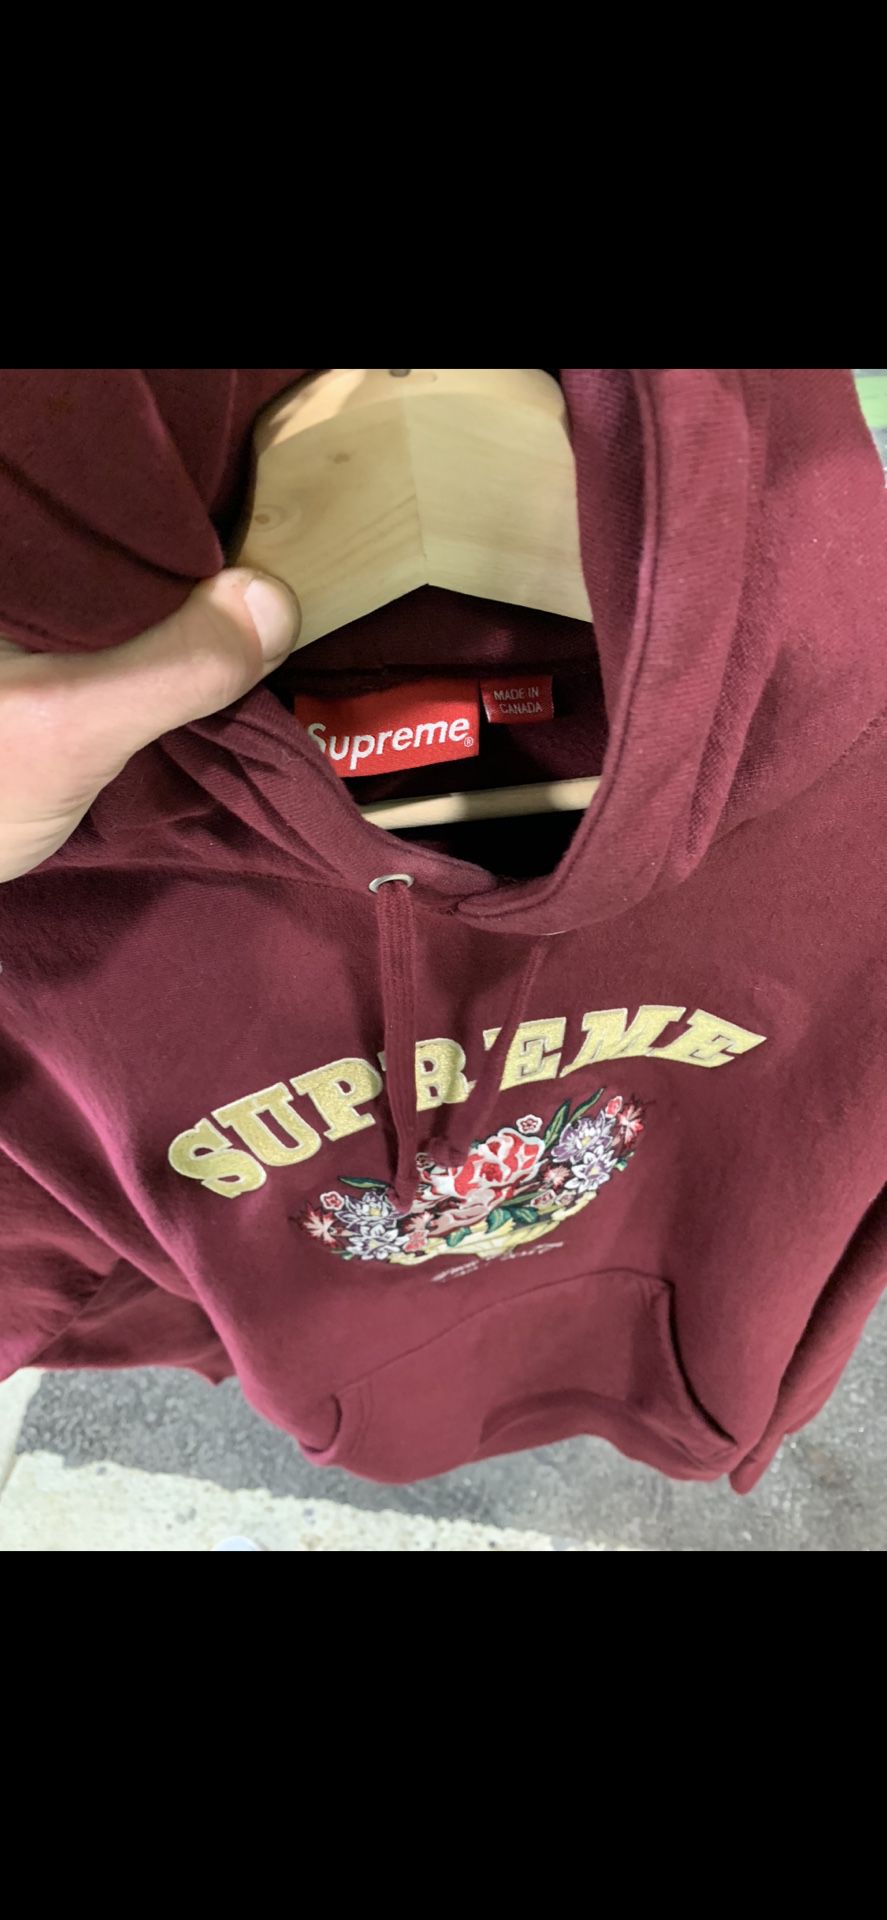 Supreme Centerpiece hoodie